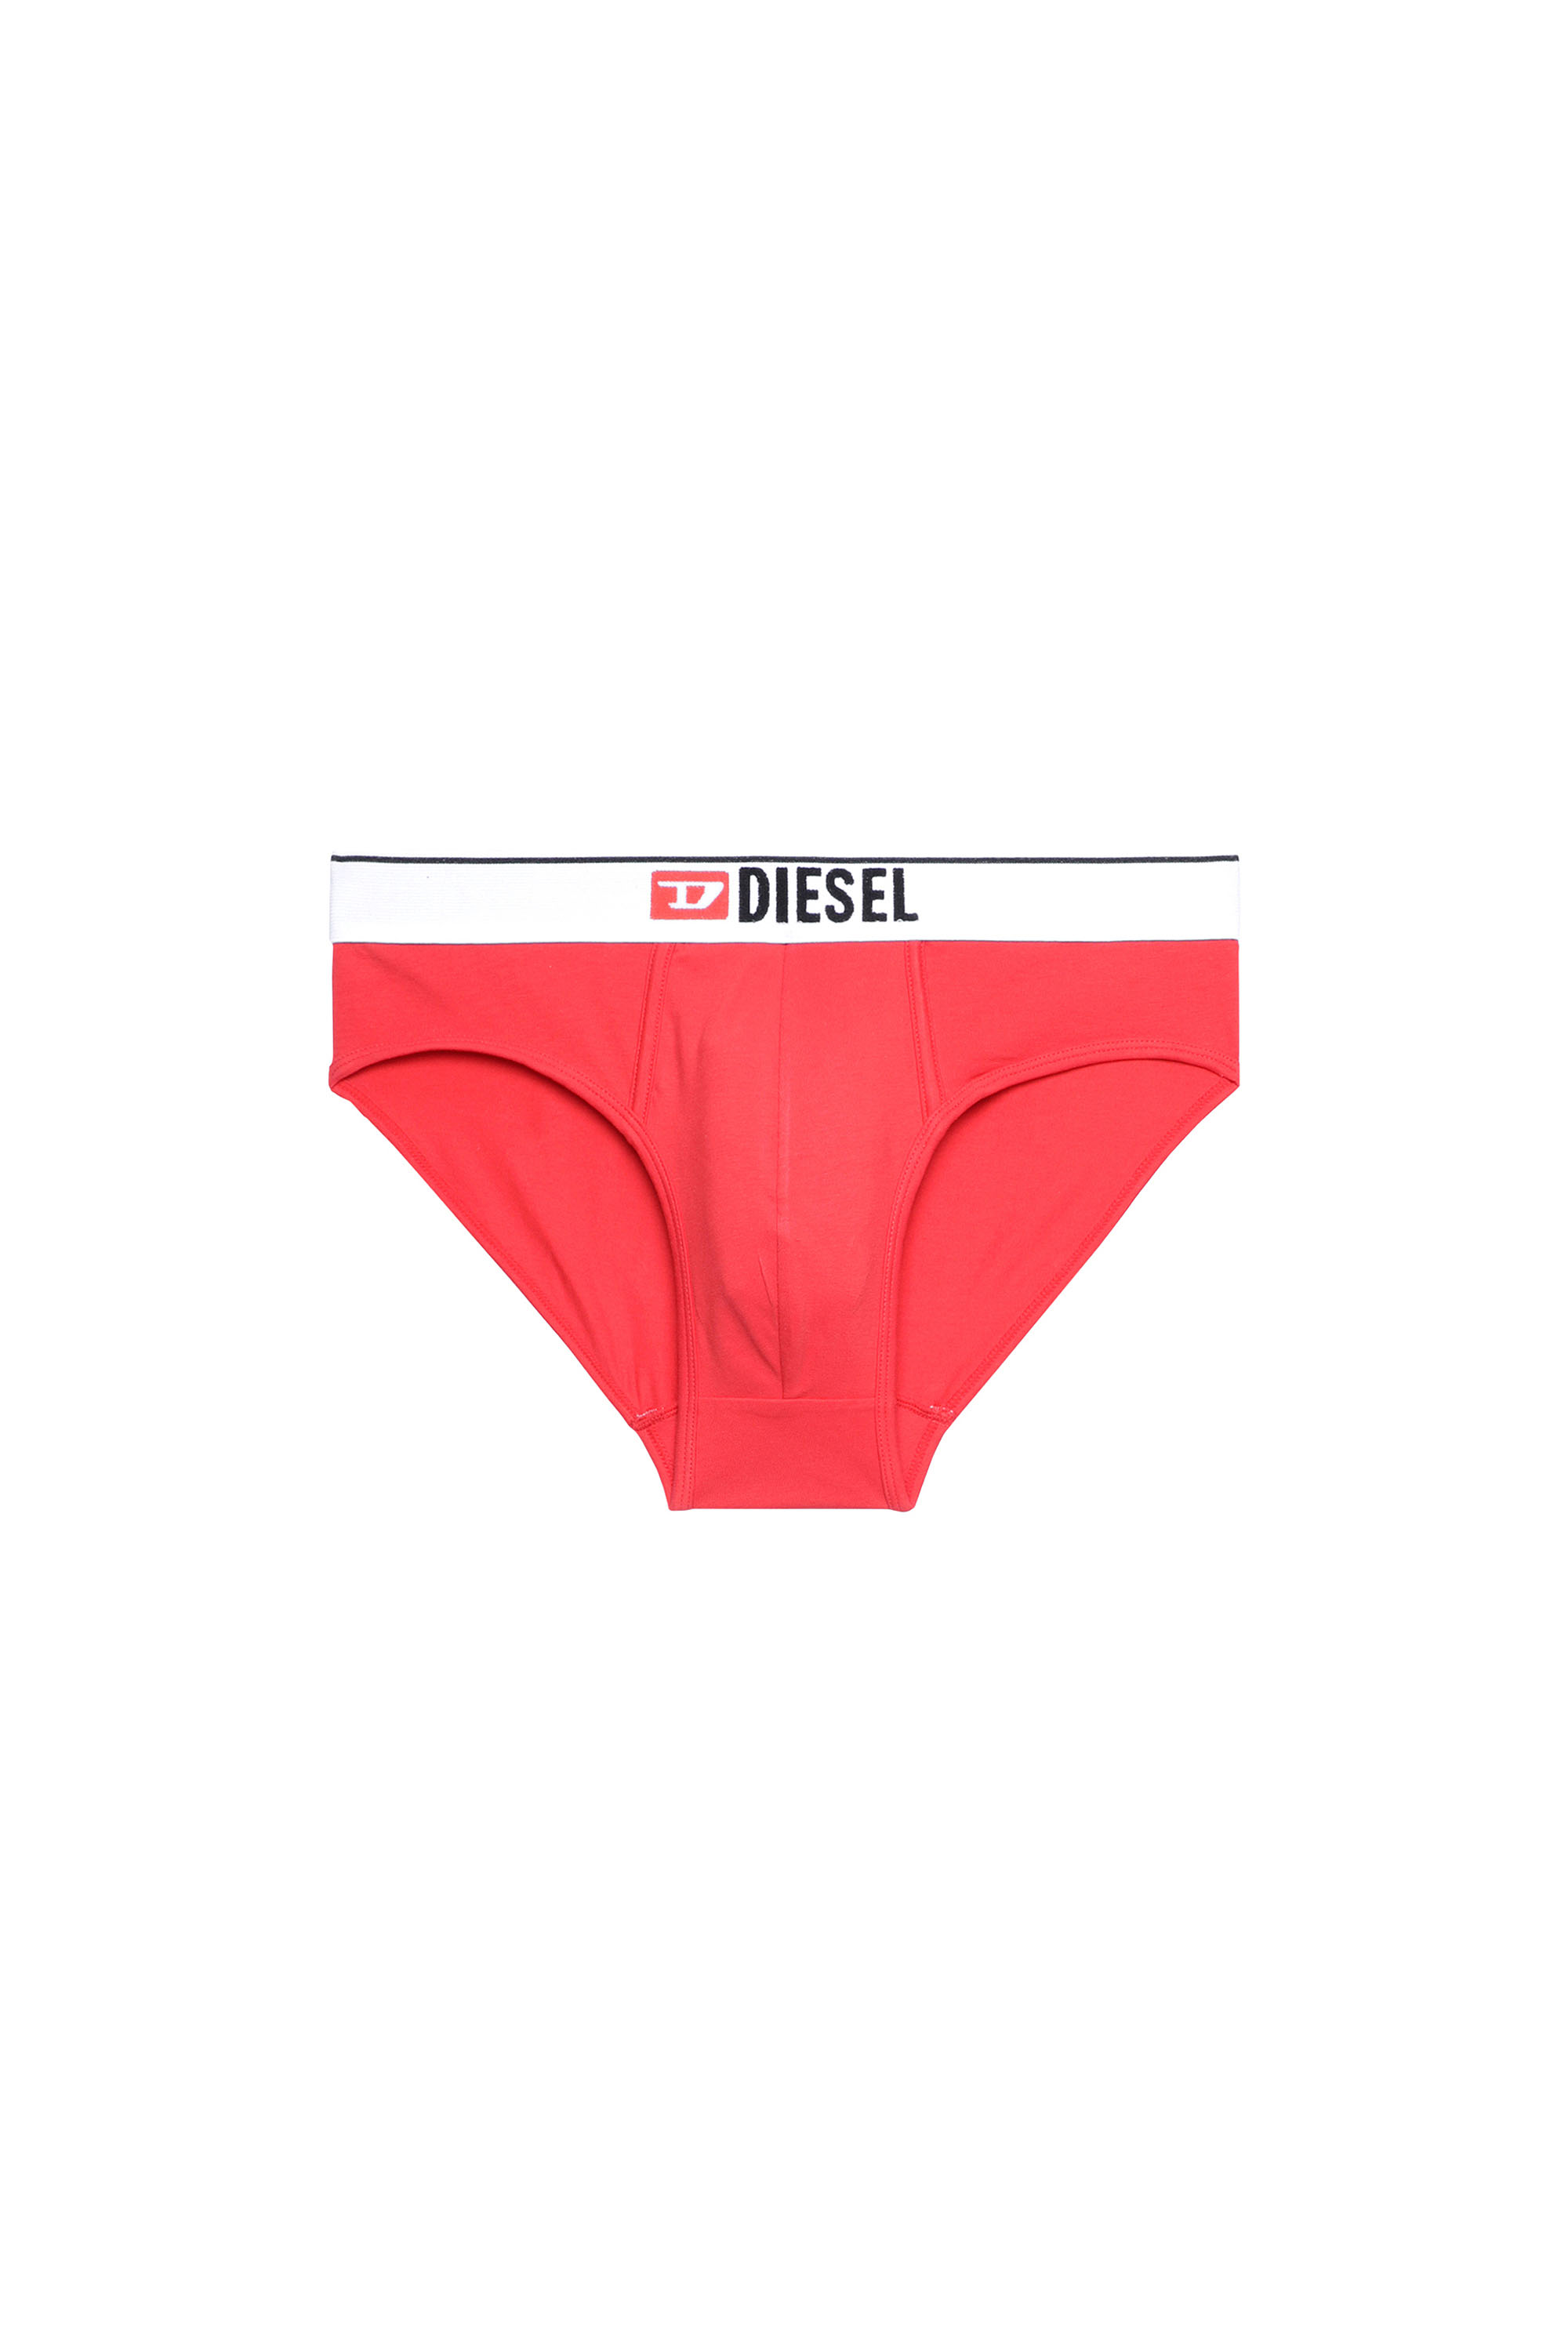 Diesel - UMBR-ANDRE, Red - Image 1